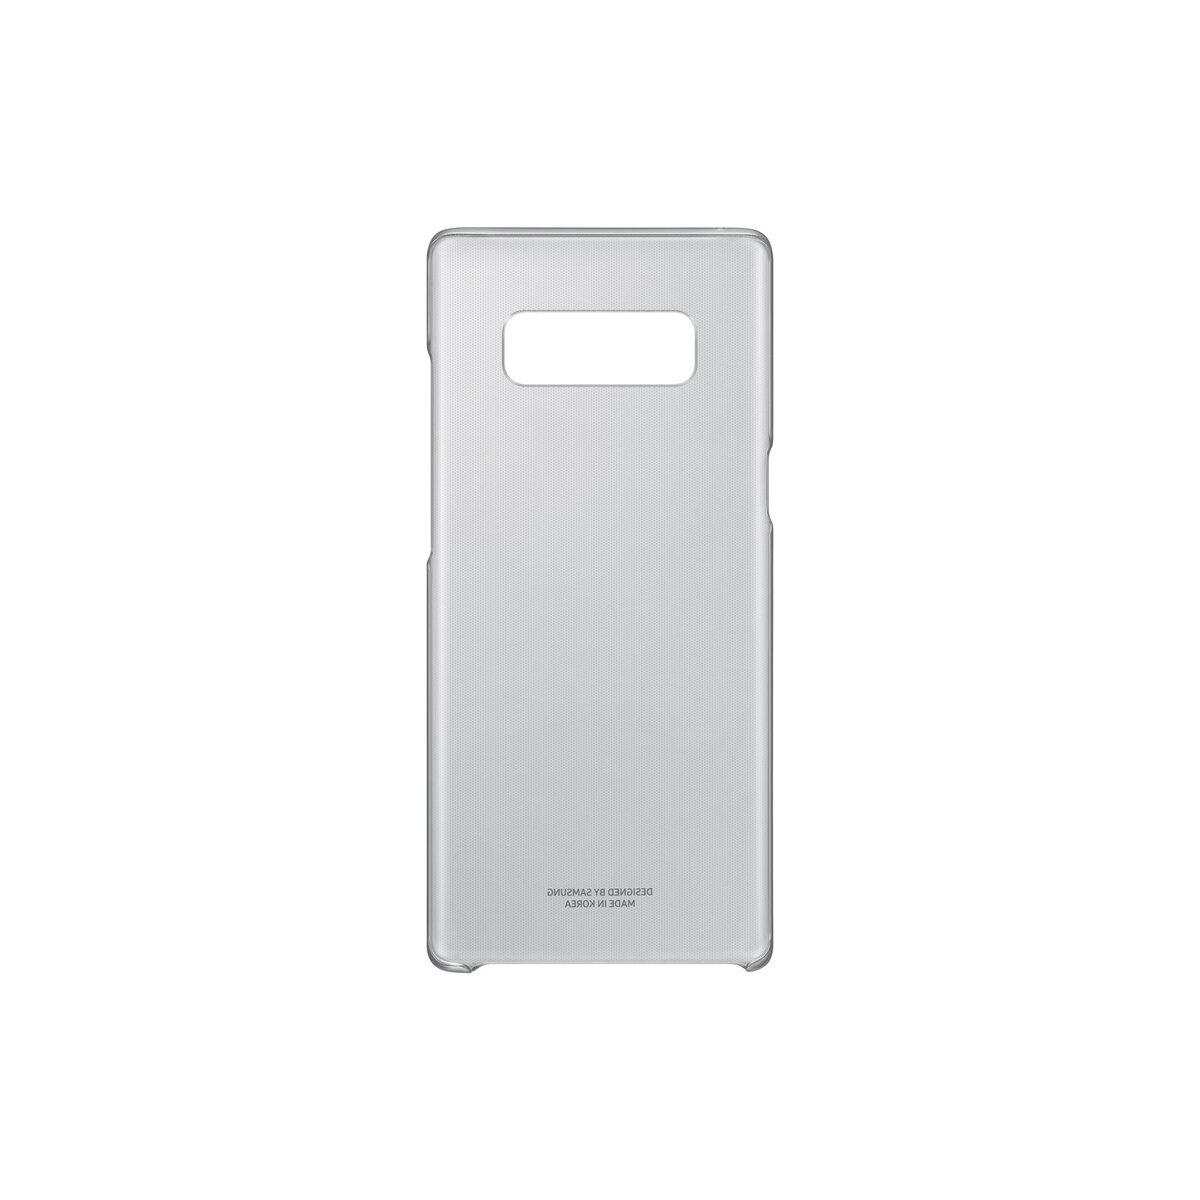 SAMSUNG Coque pour Galaxy Note 3 - Transparent